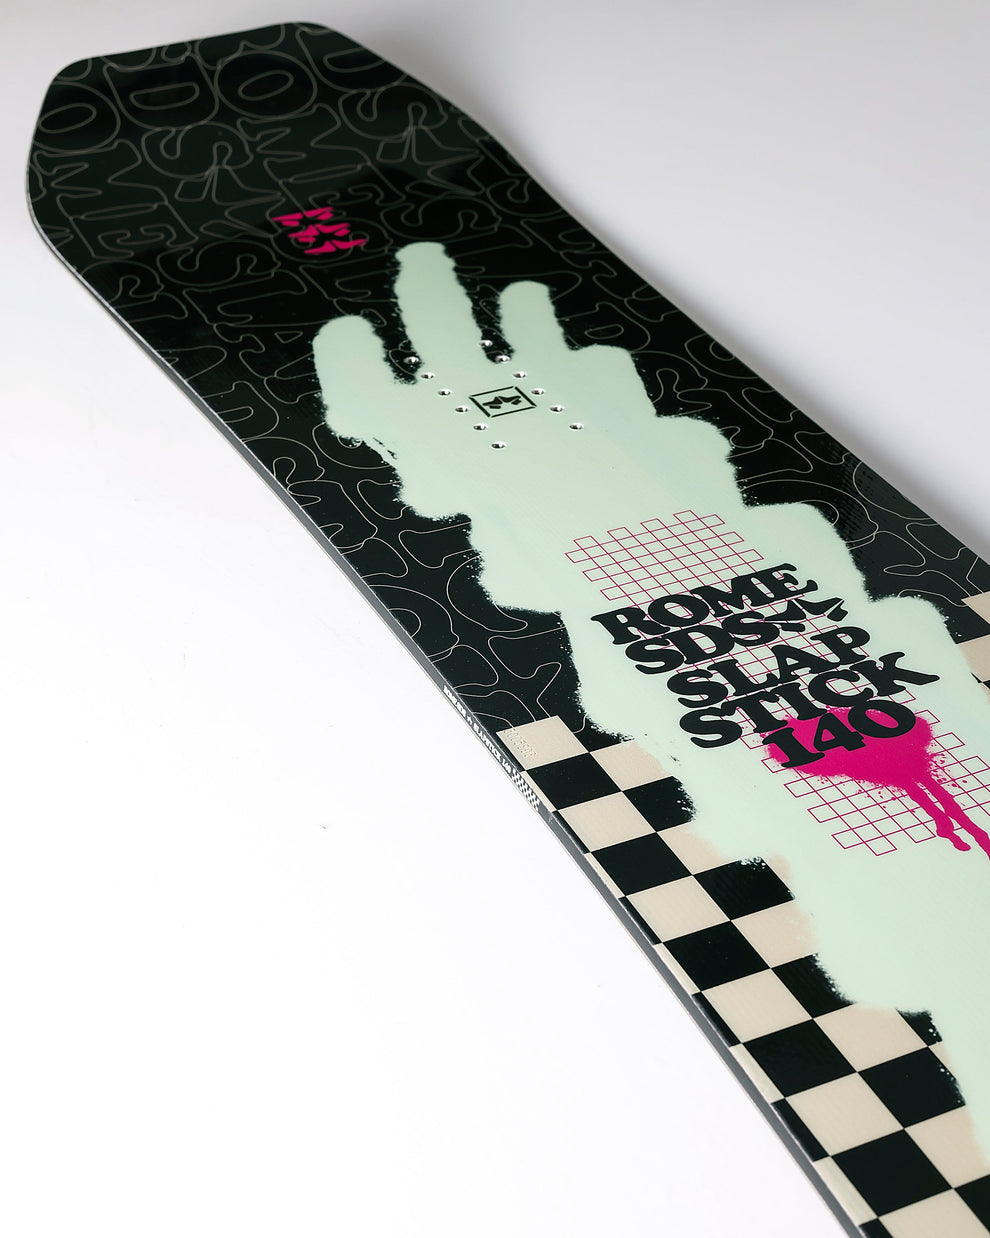 Snowboard Enfant Rome Slapstick 2024 | Boutique de snowboard | Collection_Zalando | Nouveaux produits | planches à neige | Produits les plus récents | Produits les plus vendus | surfdevils.com